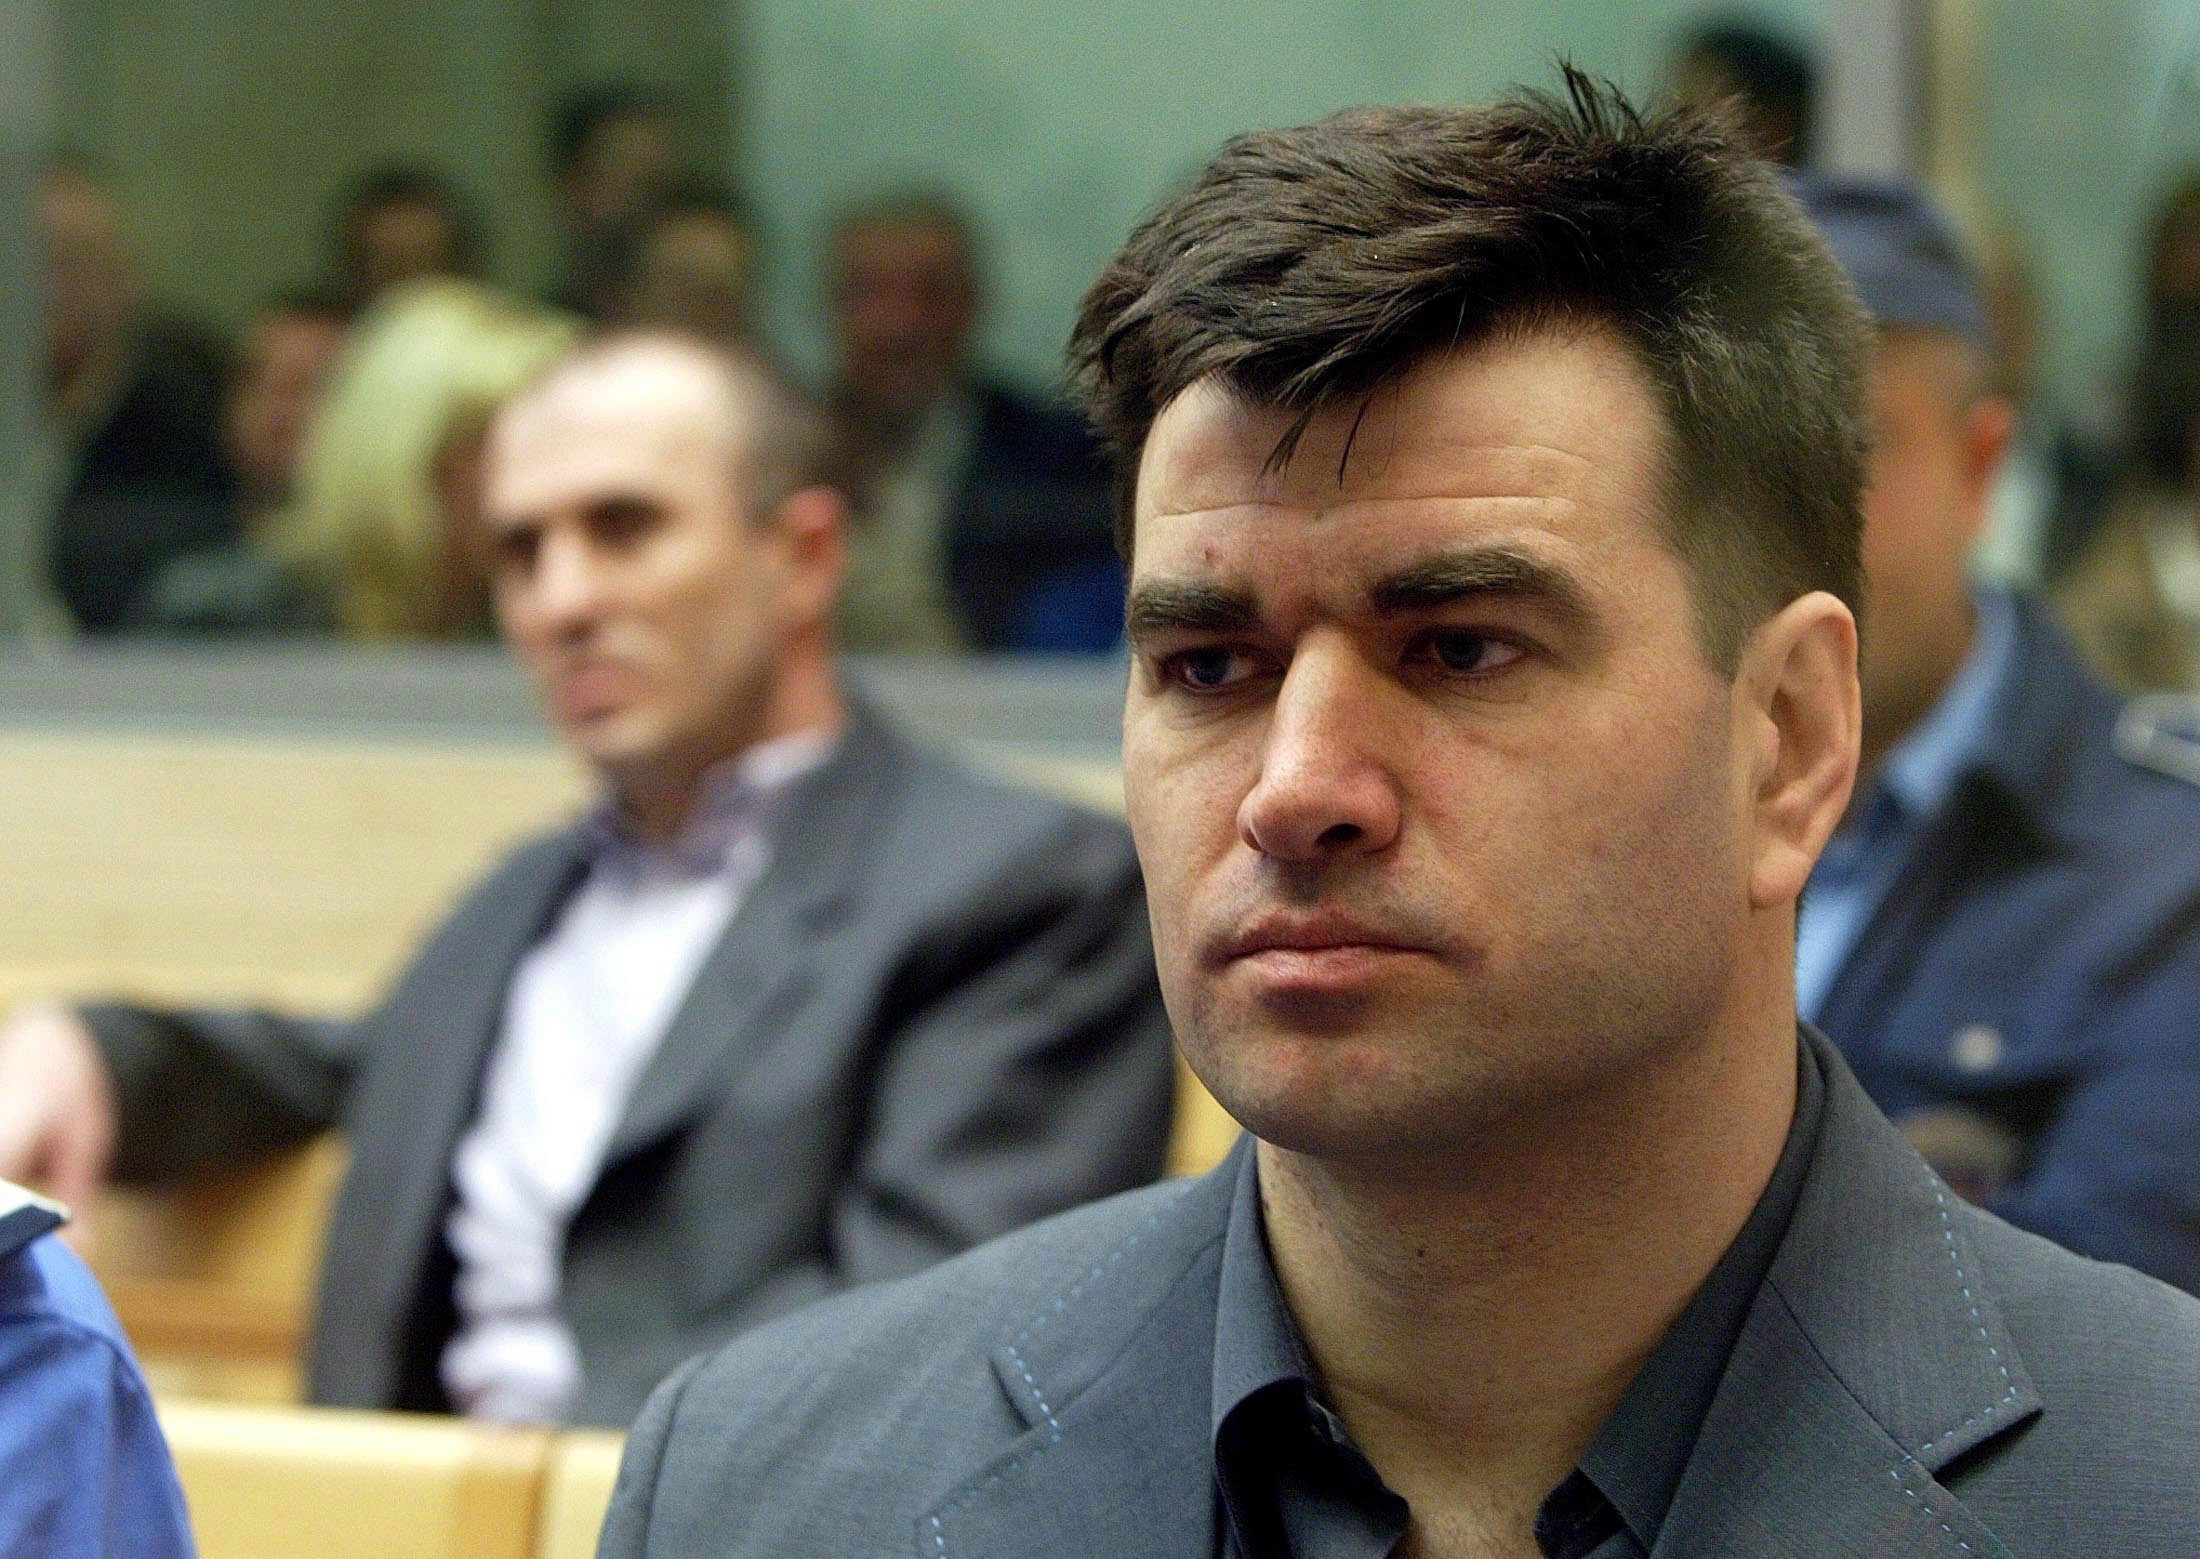 Ponovljeno suđenje za zločin na Ibarskoj magistrali počelo pre 20 godina, Radomir Marković i Milan Radonjić još jednom bili protagonisti 4